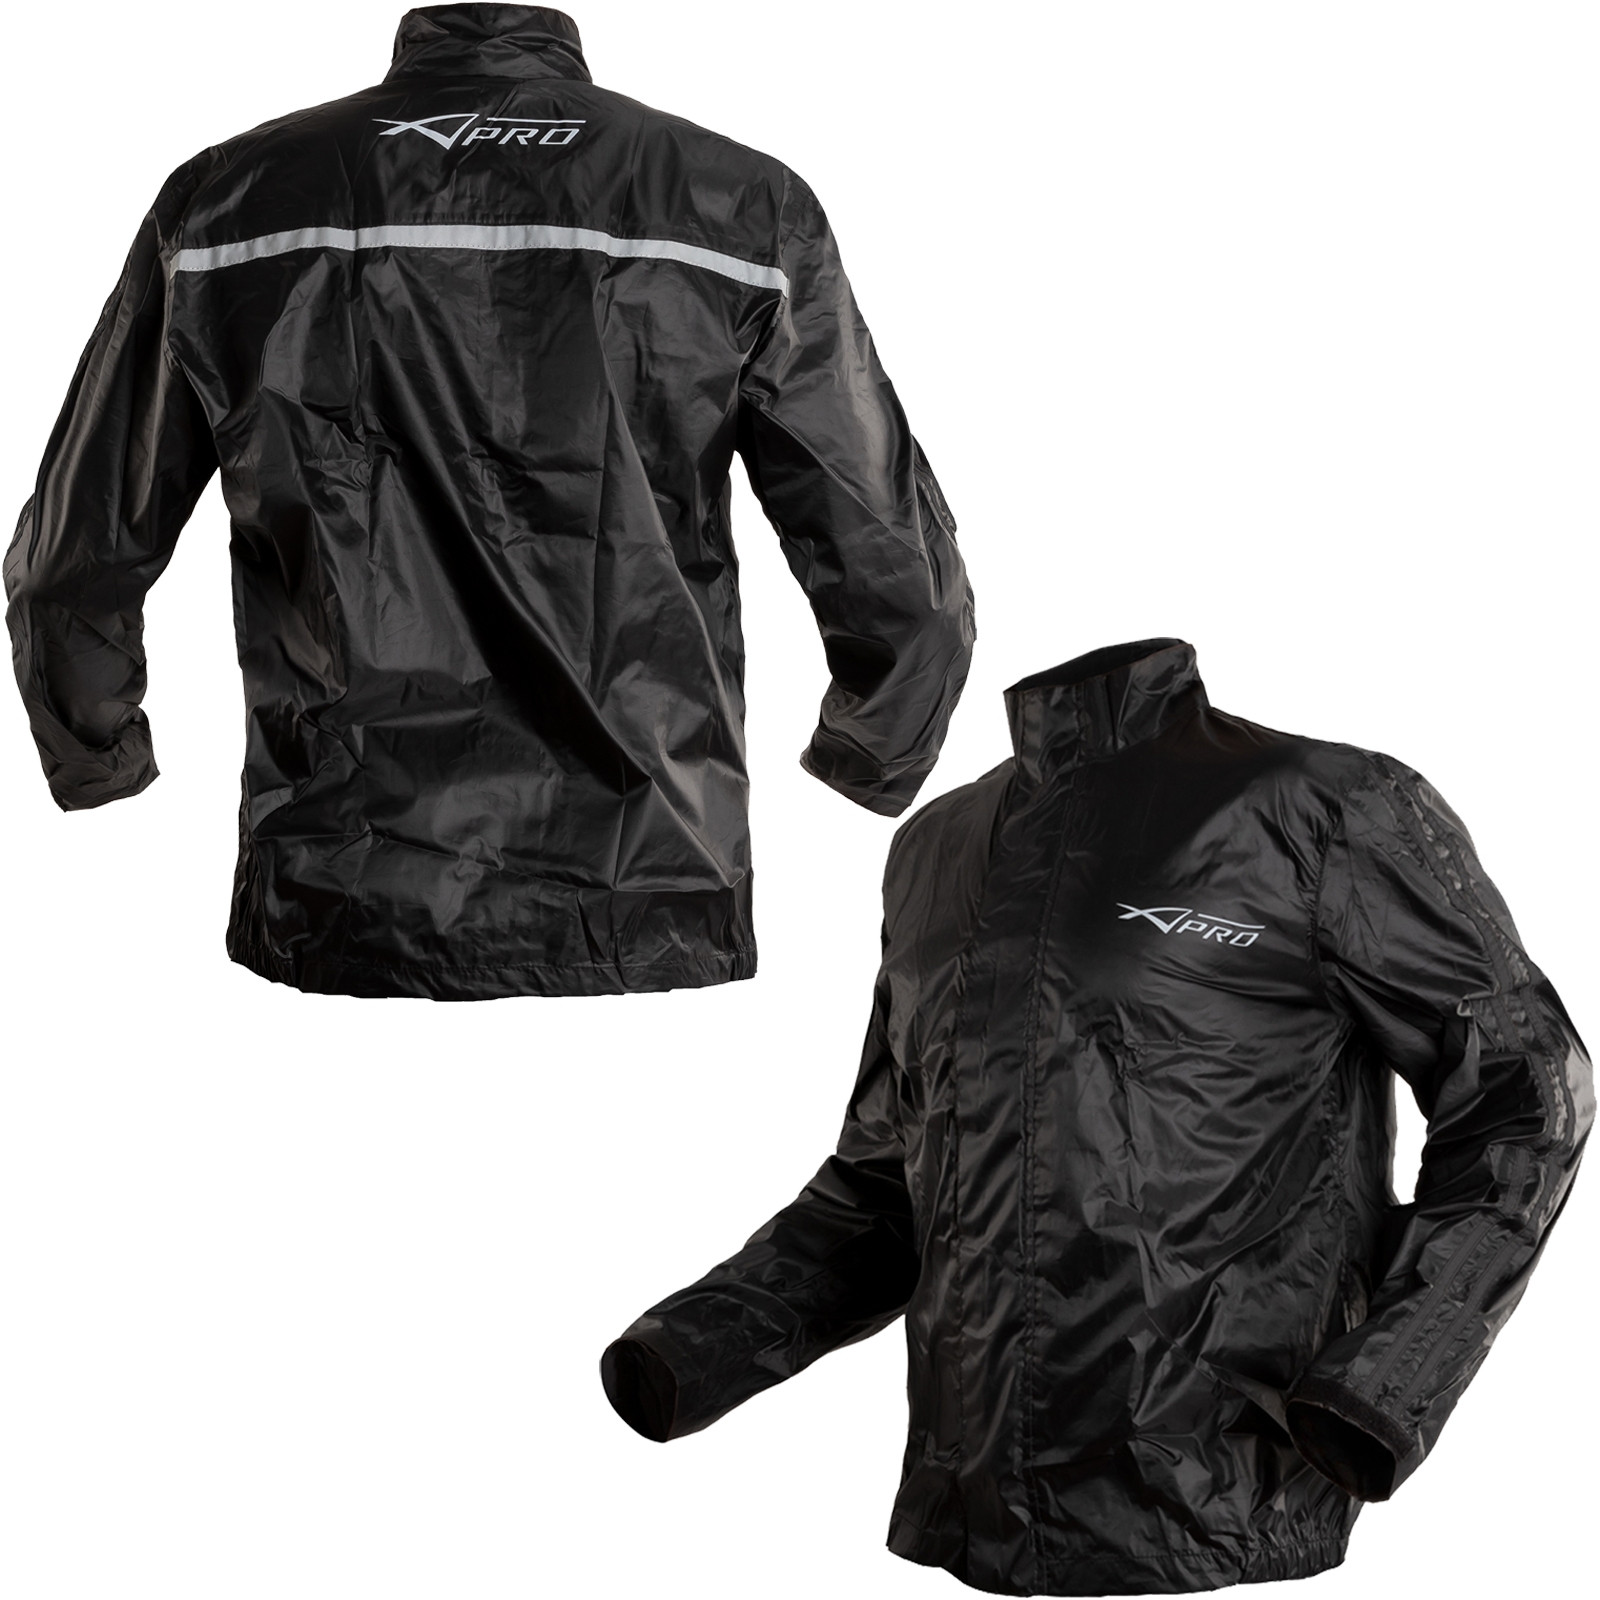 Abbigliamento Moto e Accessori - Giacca Tuta Impermeabile Moto Antiacqua  Antivento Antipioggia Nero